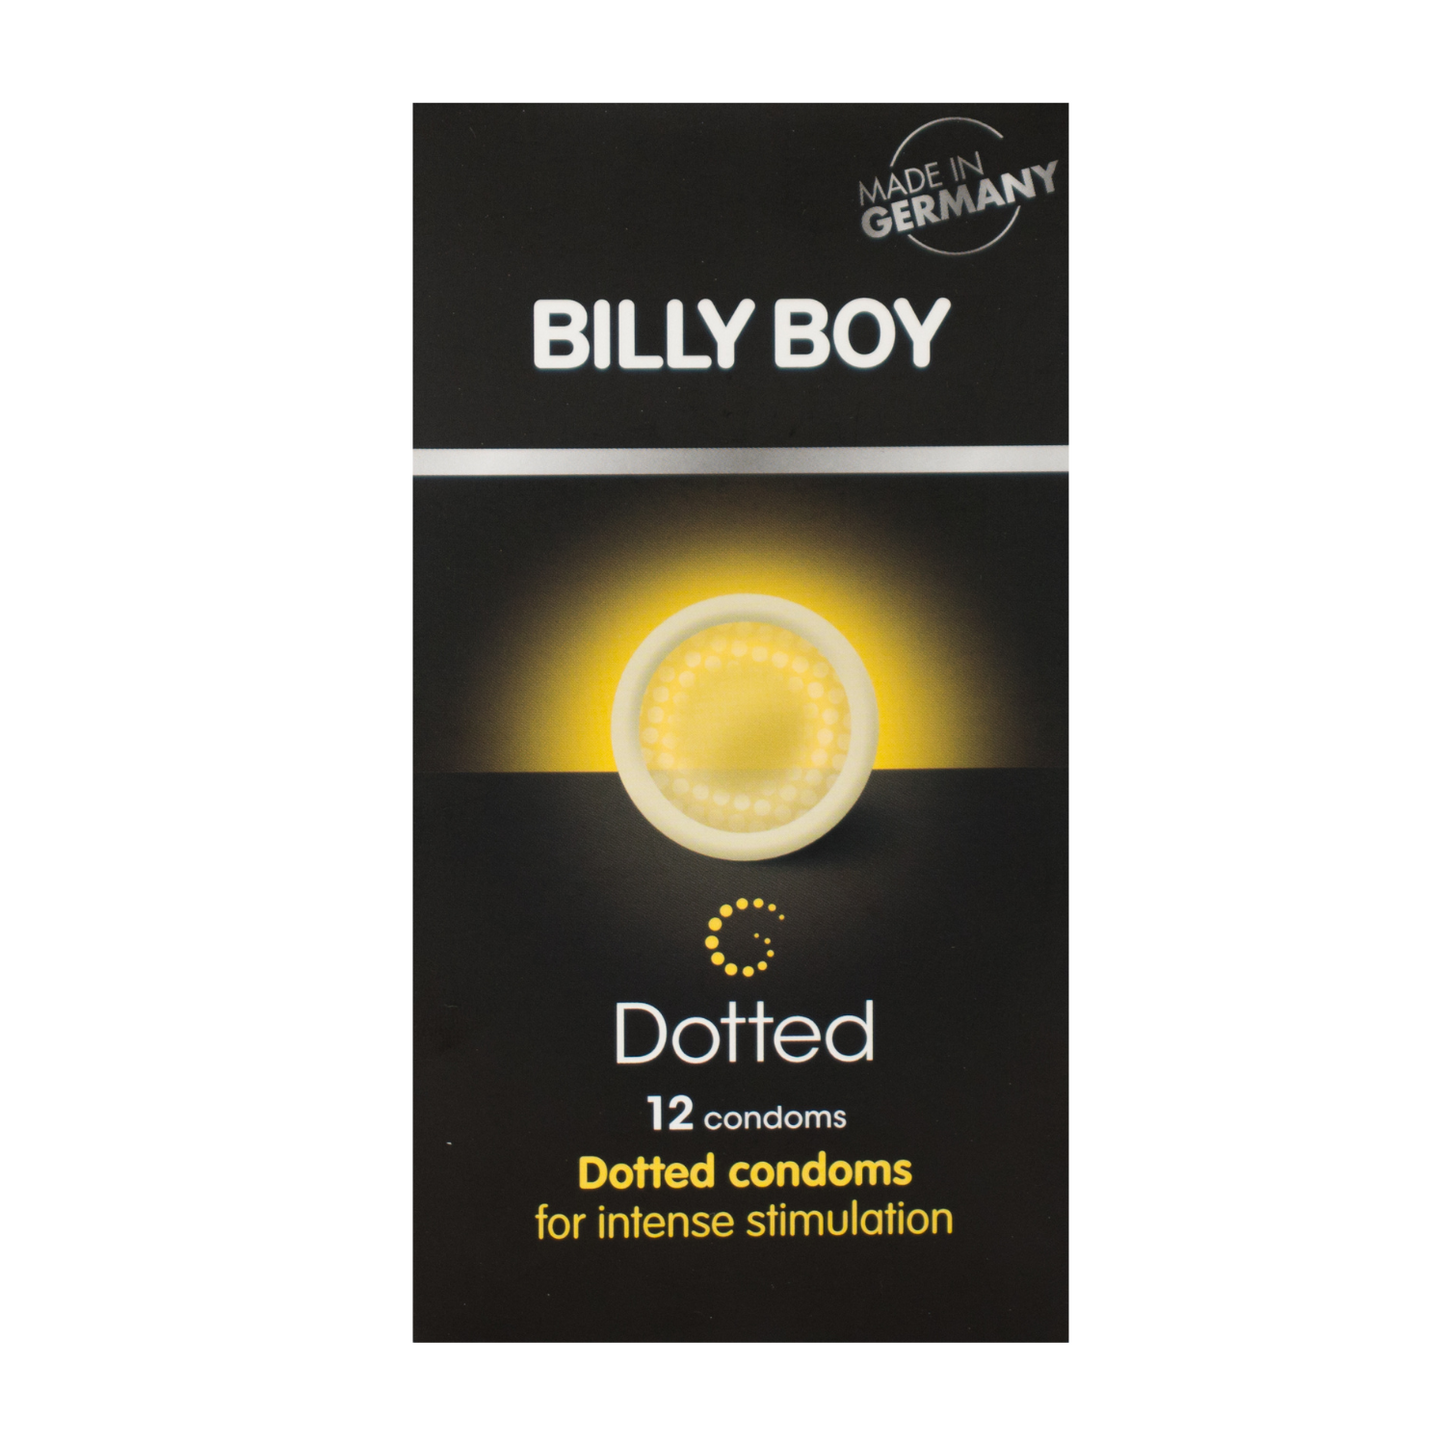 Doosje met de beste Duitse kwaliteit-condooms: Billy Boy Dotted condooms! Te koop bij Flavourez.